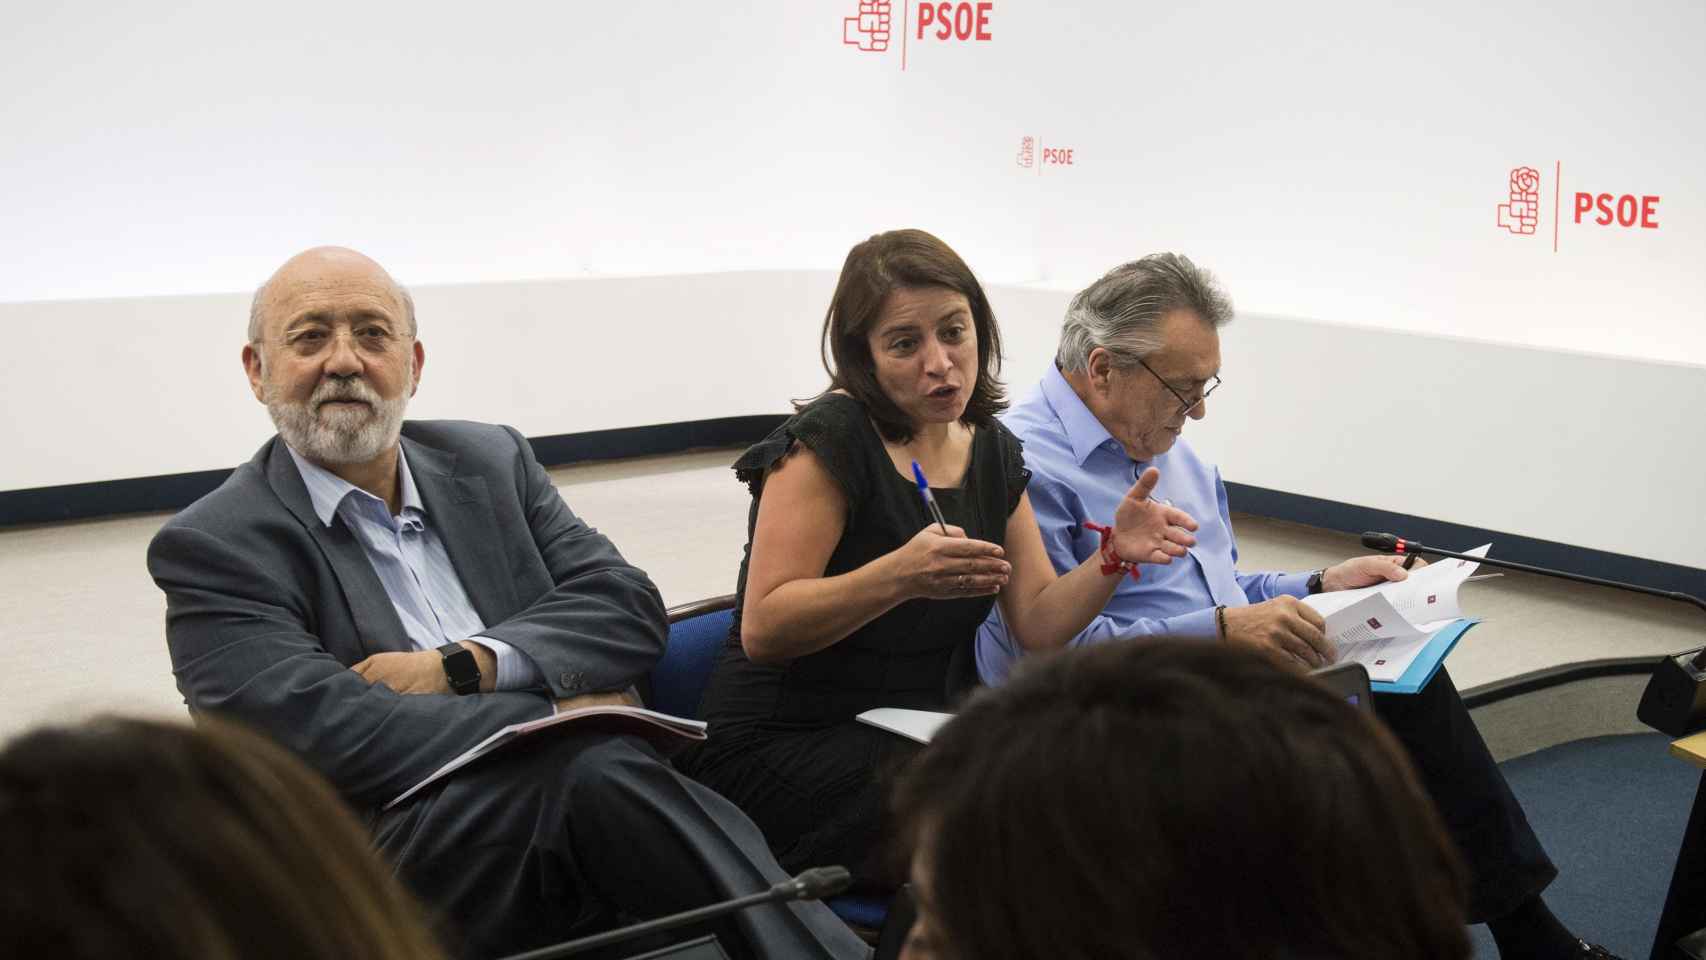 Los socialistas Adriana Lastra, Manuel Escudero y José Félix Tezanos, durante la presentación de las enmiendas al documento marco del 39 congreso federal del PSOE.